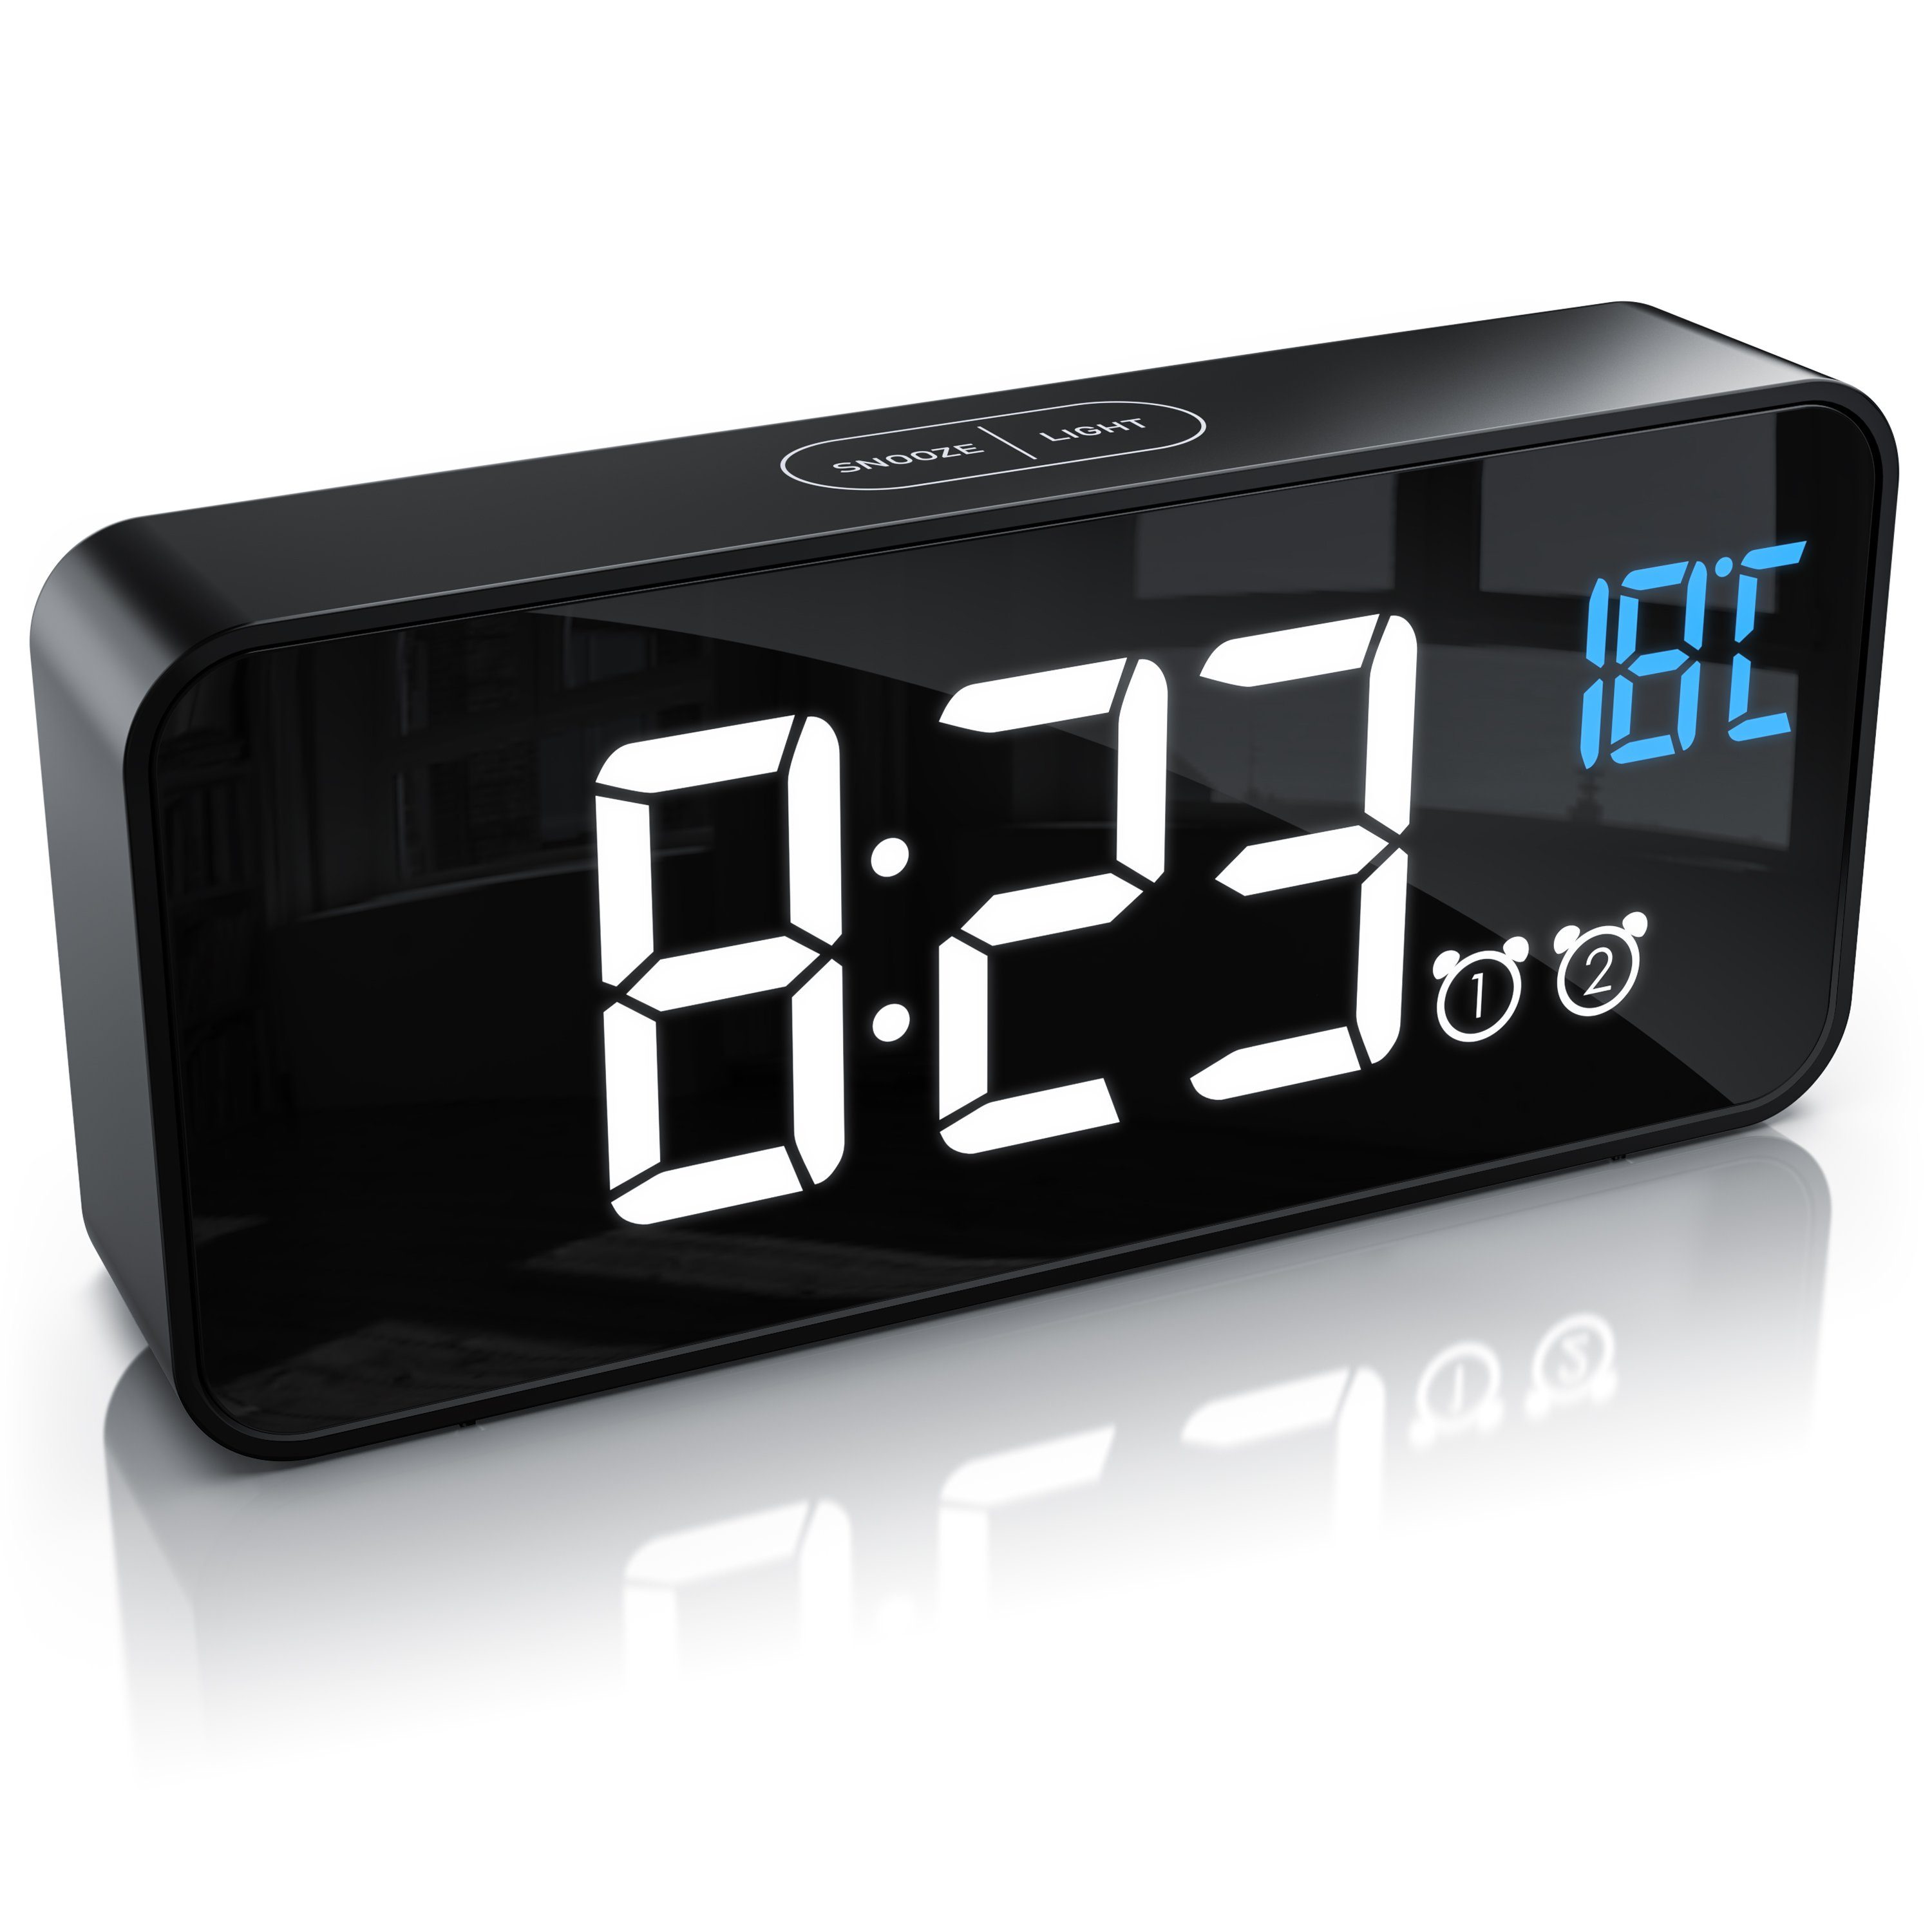 Solar Digitale Uhr Für Auto Beleuchtet Auto Uhr Uhren Portable Stick-auf  Digitale Uhr Batterie Betrieben Und Solar Powered auto - AliExpress